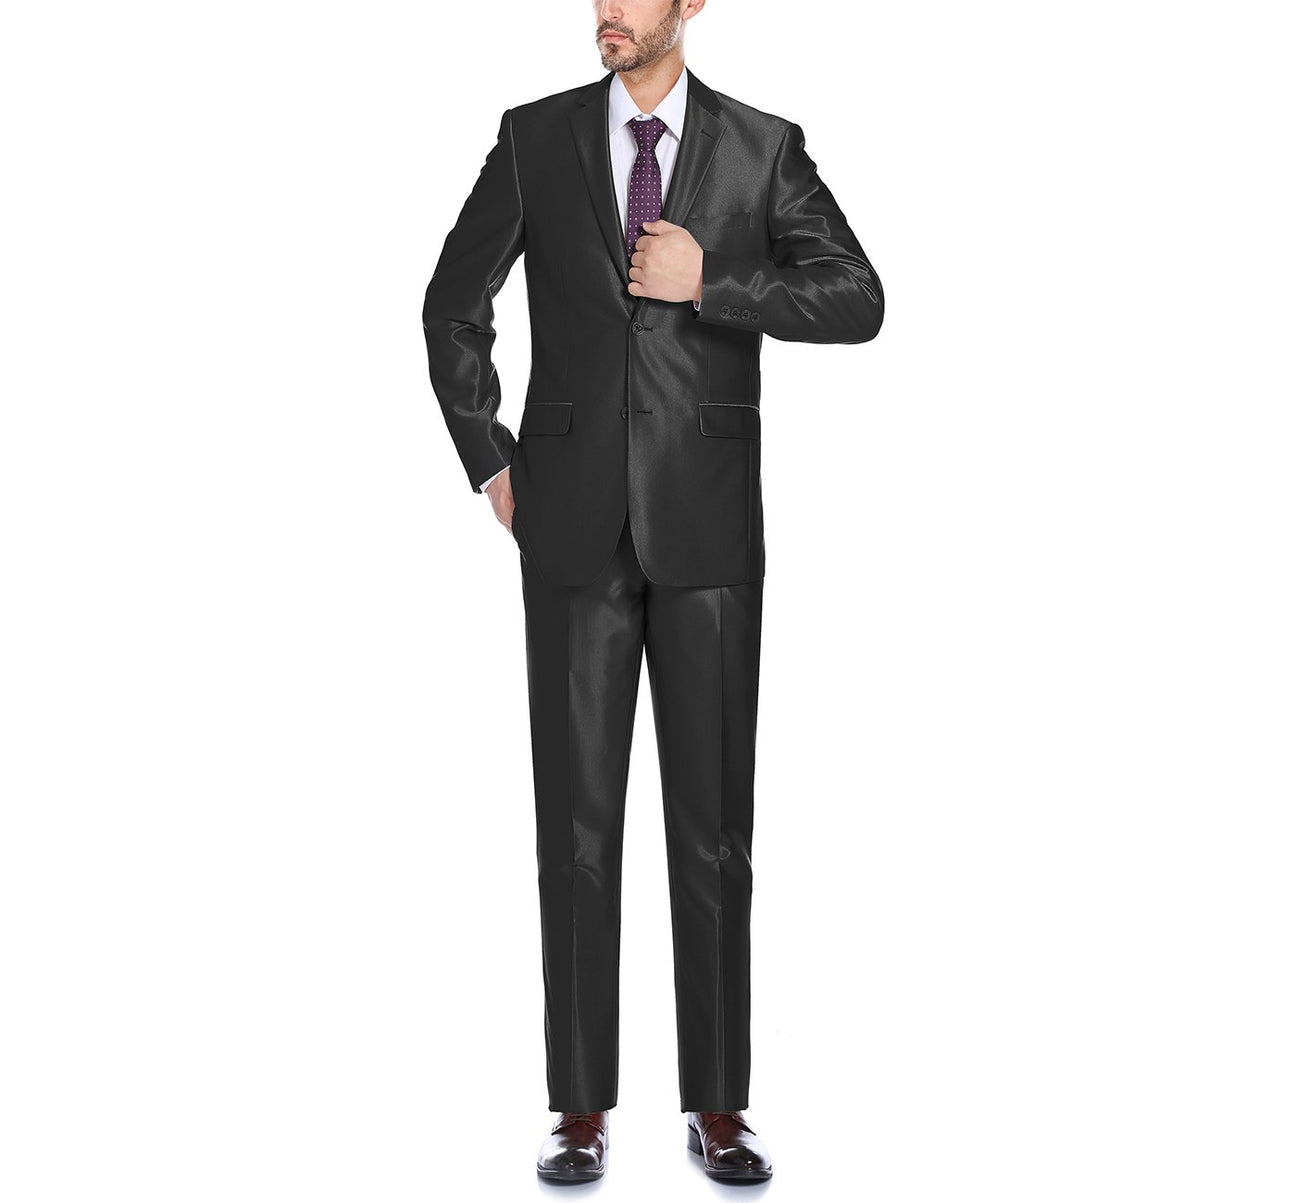 Renoir 207-1 Men's Sharkskin Italian Styled Two Piece Slim Fit Suit